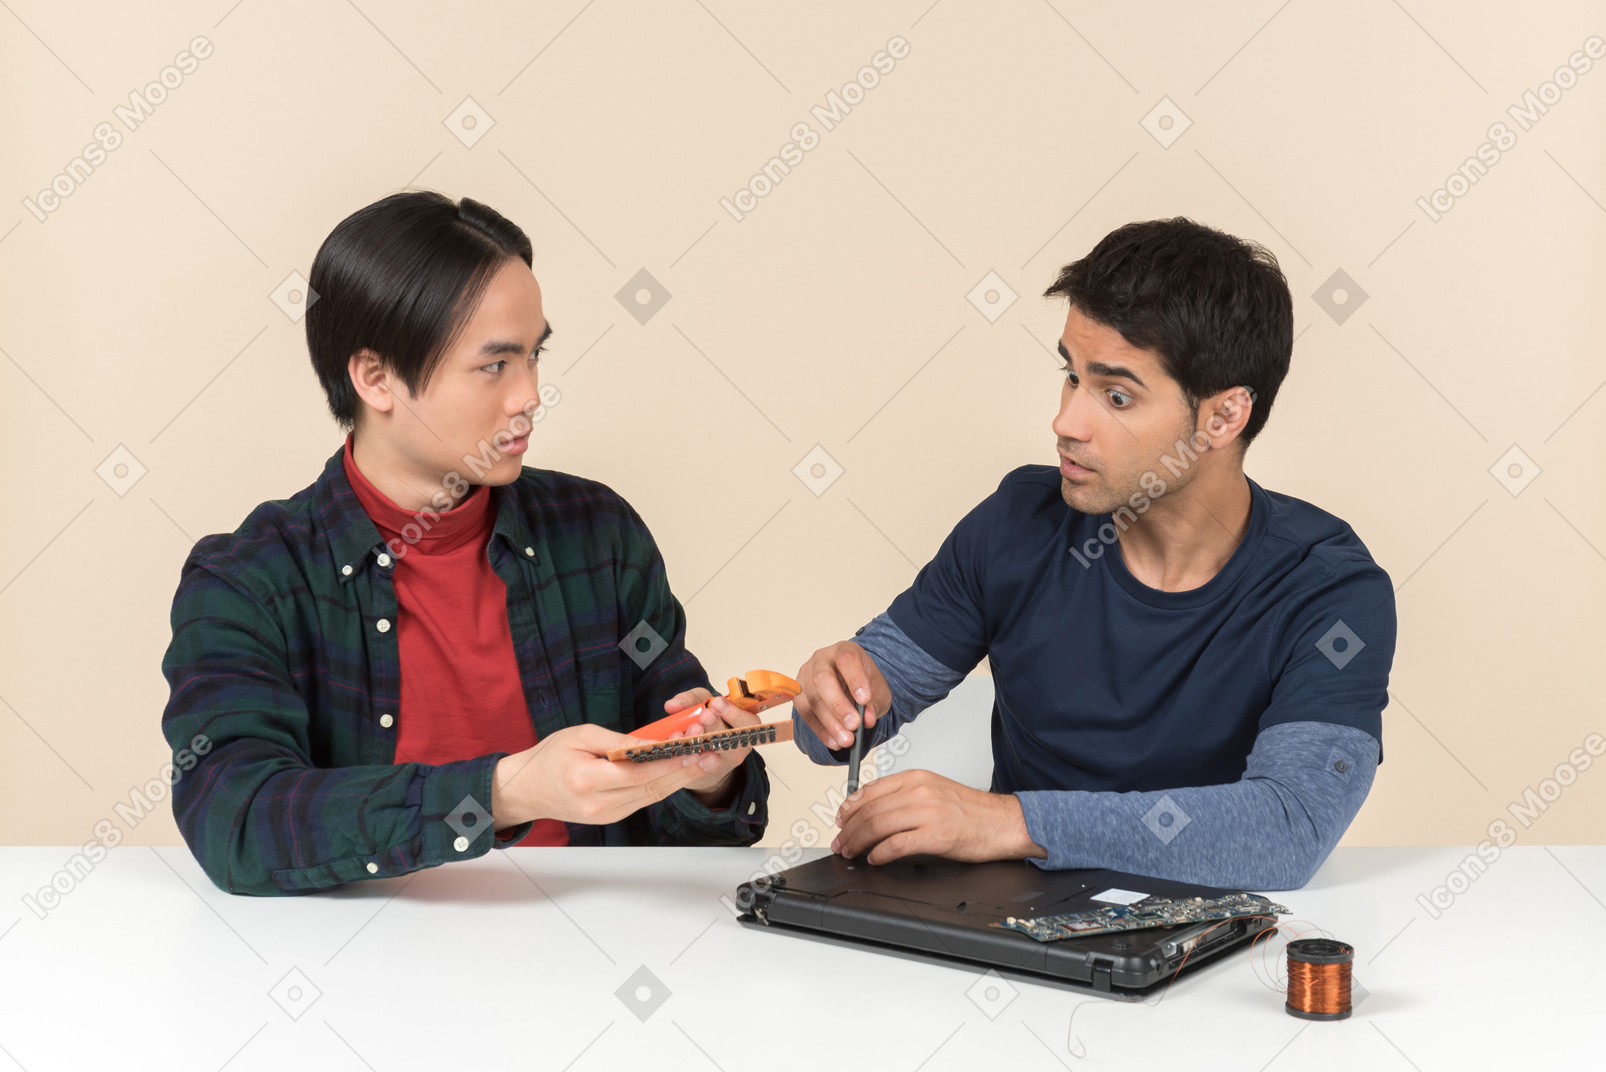 Два молодых гика, сидящих за столом и имеющих проблемы с починкой ноутбука